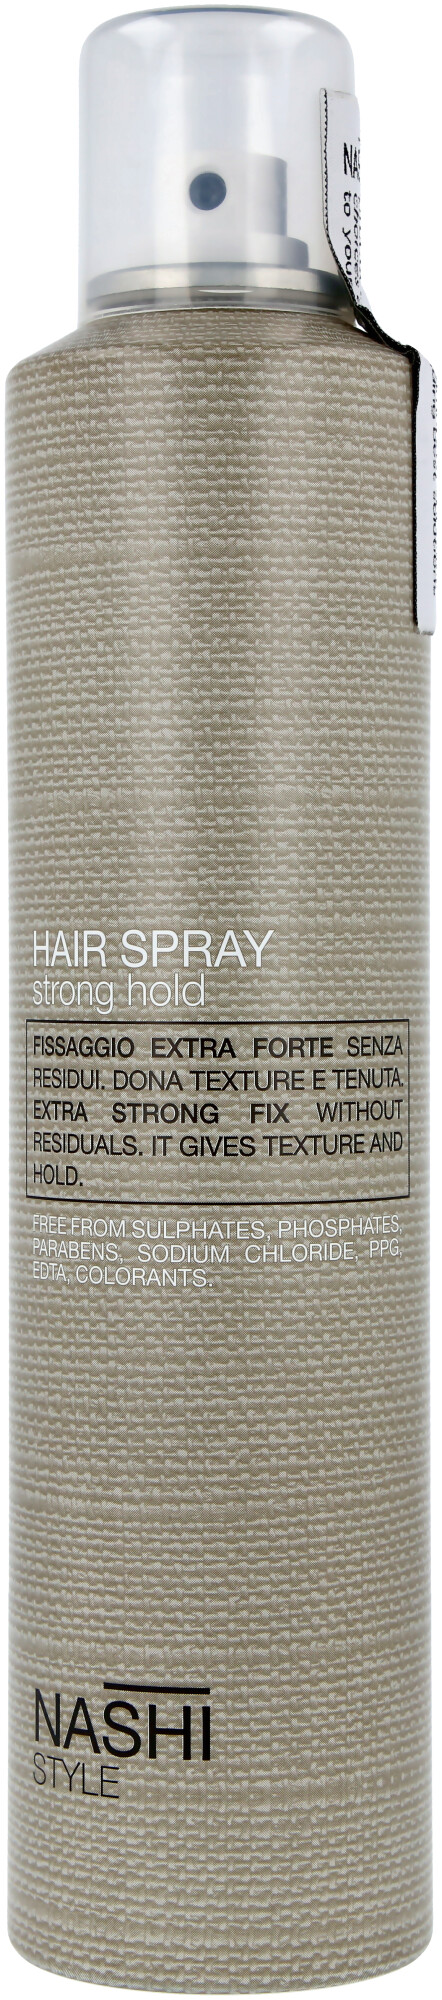 Nashi Argan Hair Spray 300 ml